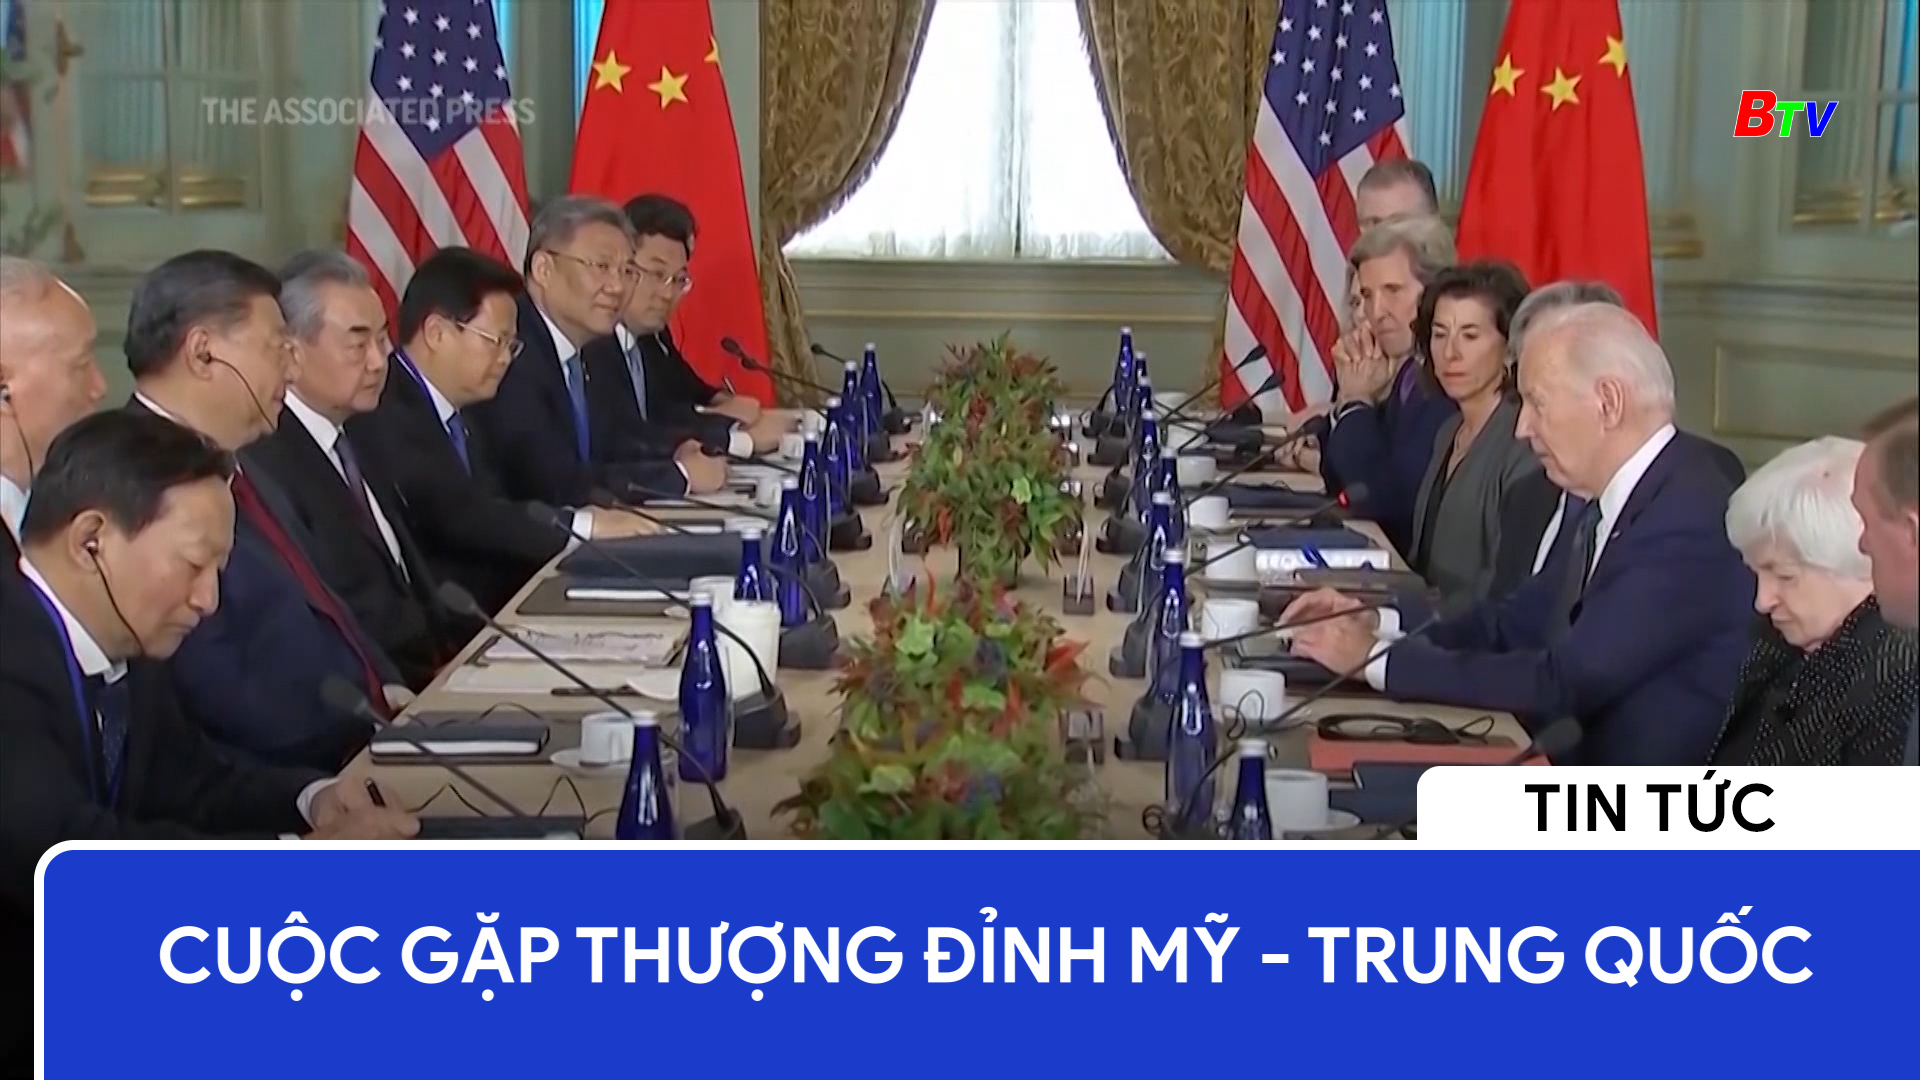 Cuộc gặp thượng đỉnh Mỹ - Trung Quốc	